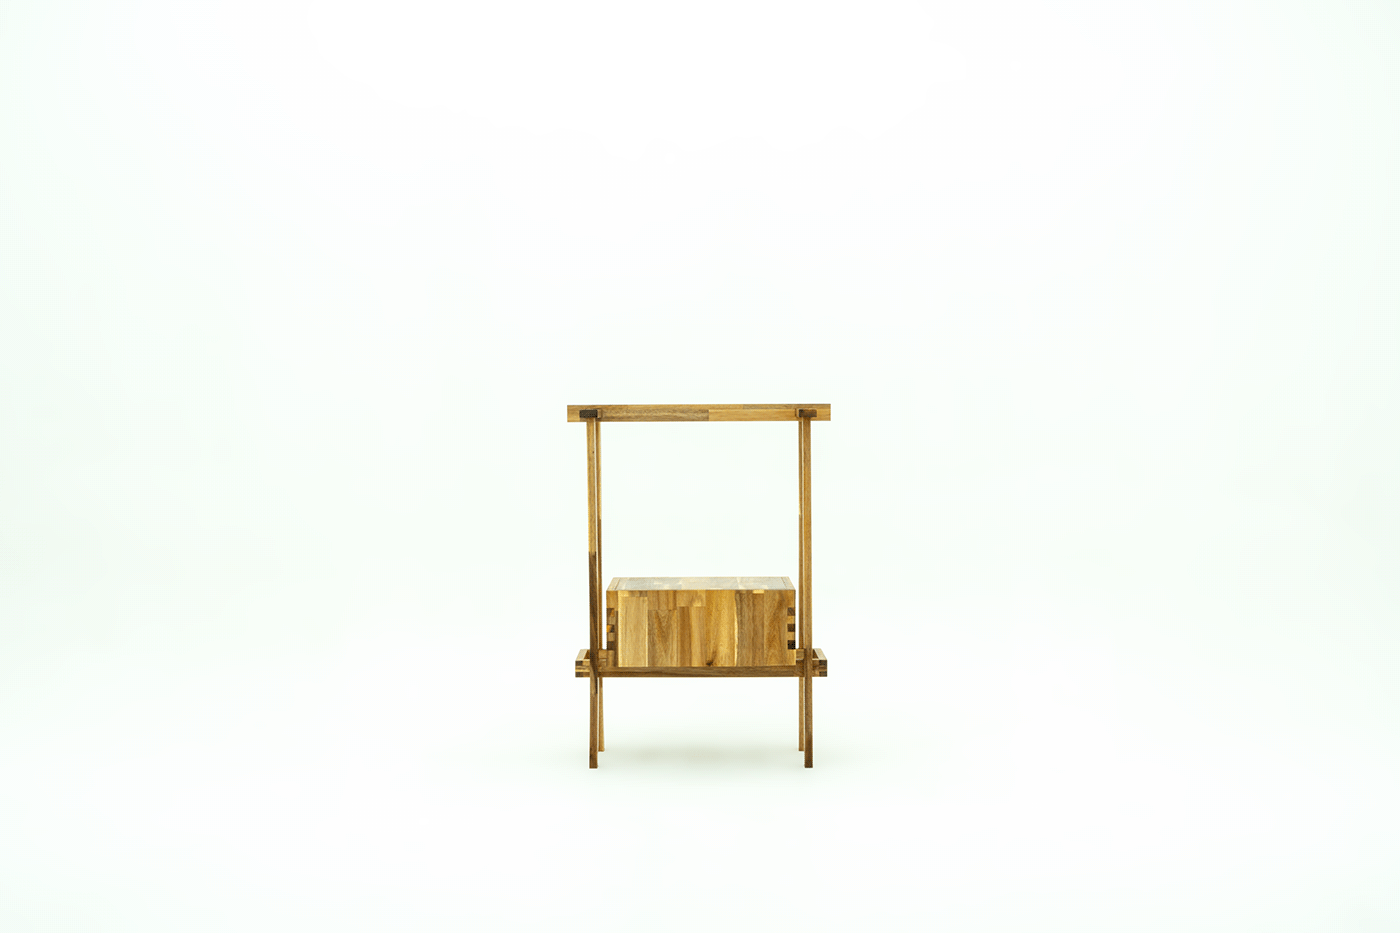 furniture chair wood design woodworking chair design sculpture art concept artwork